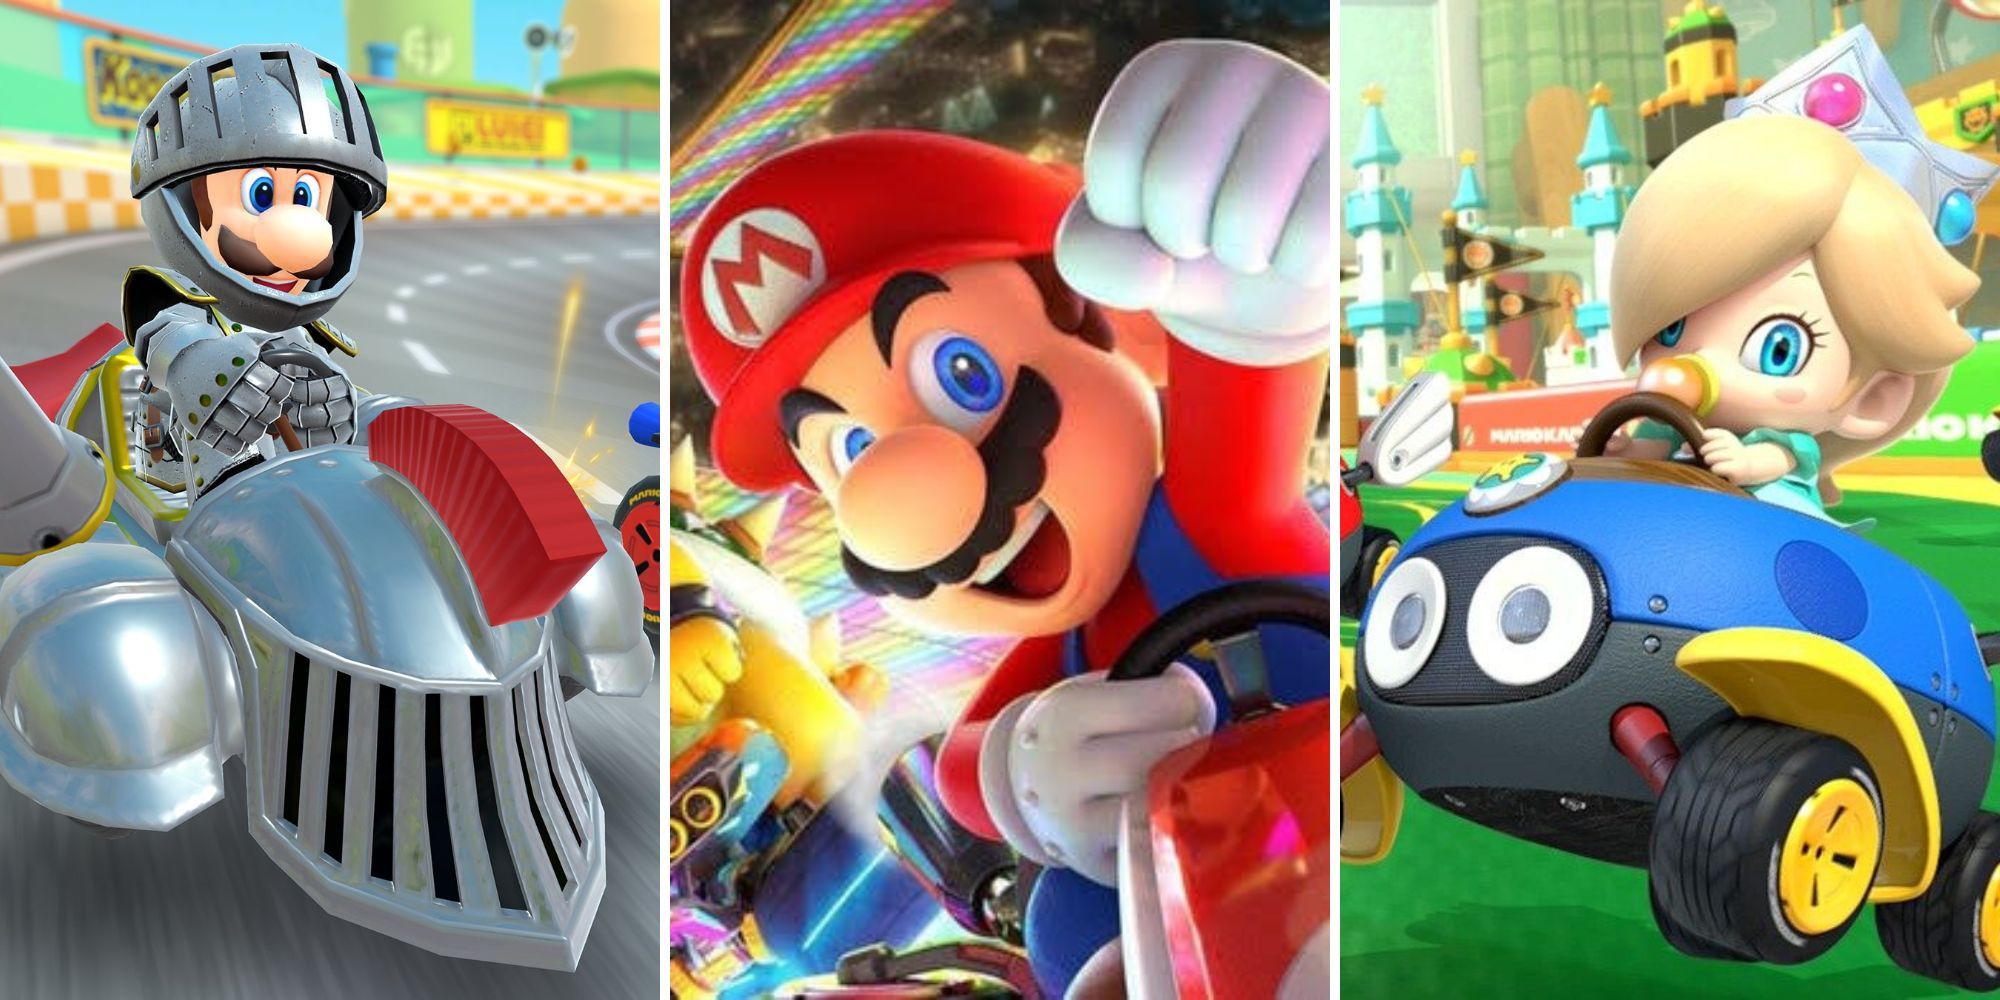 Luigi fährt in einem gepanzerten Fahrzeug, Mario hebt seine Faust auf der Rainbow Road, Baby Rosalina fährt einen Biddybuggy